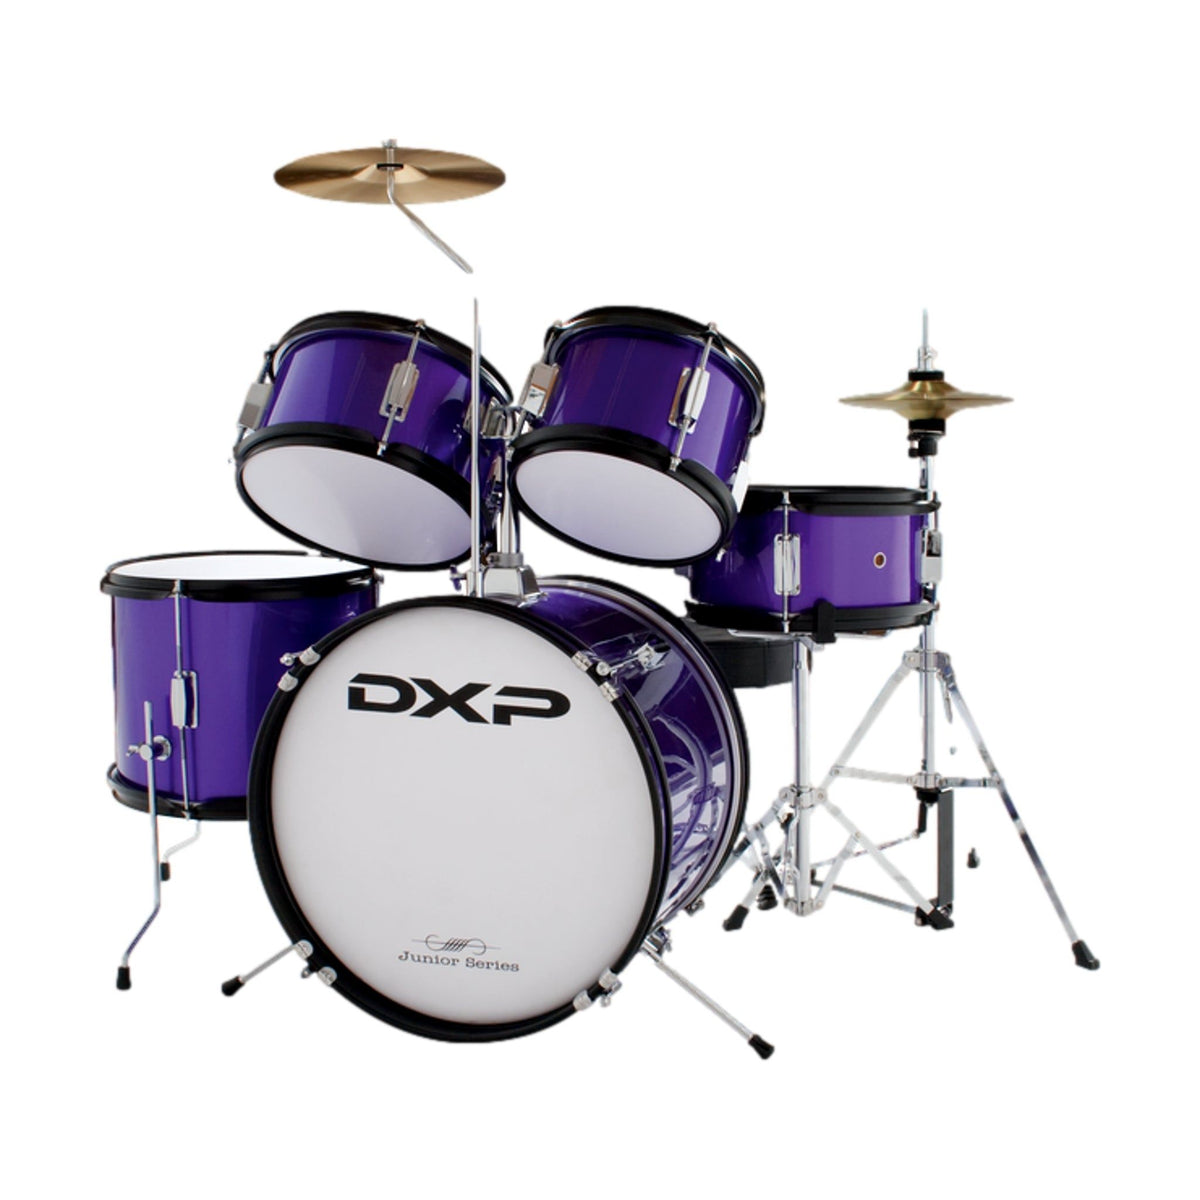 DXP Junior Series 5-Piece Drum Kit Purple